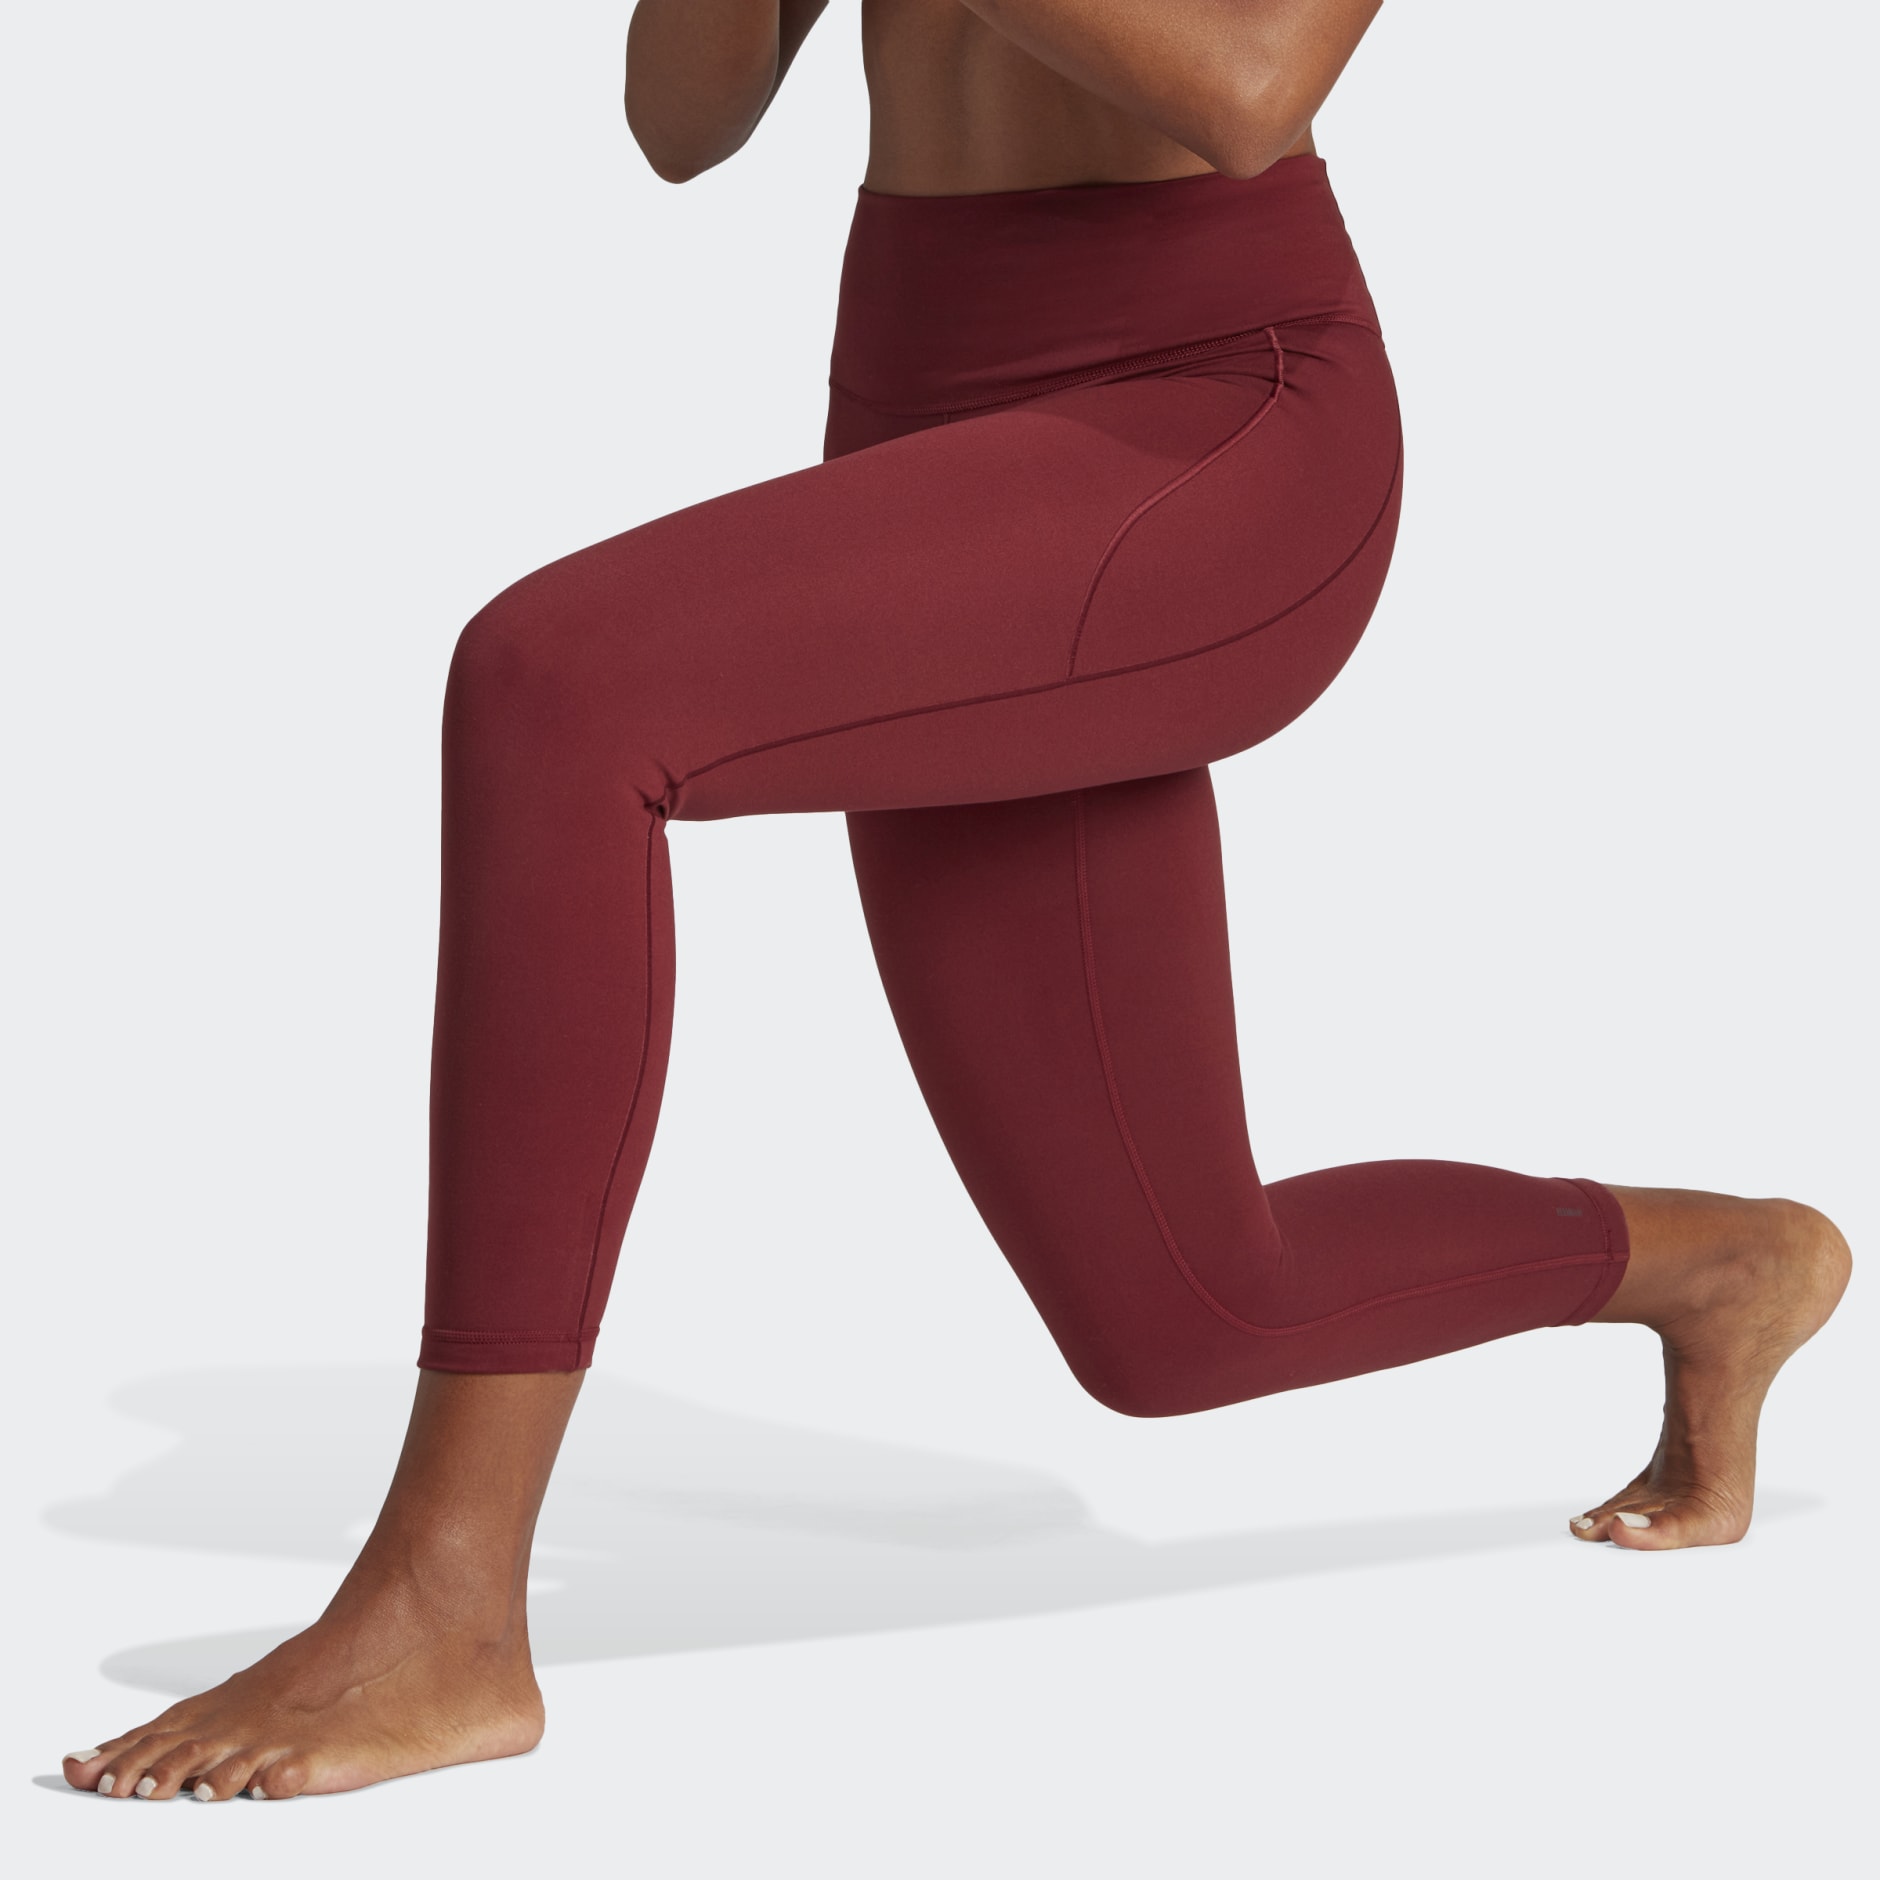 Women's Yoga Studio 7/8 Tight, adidas